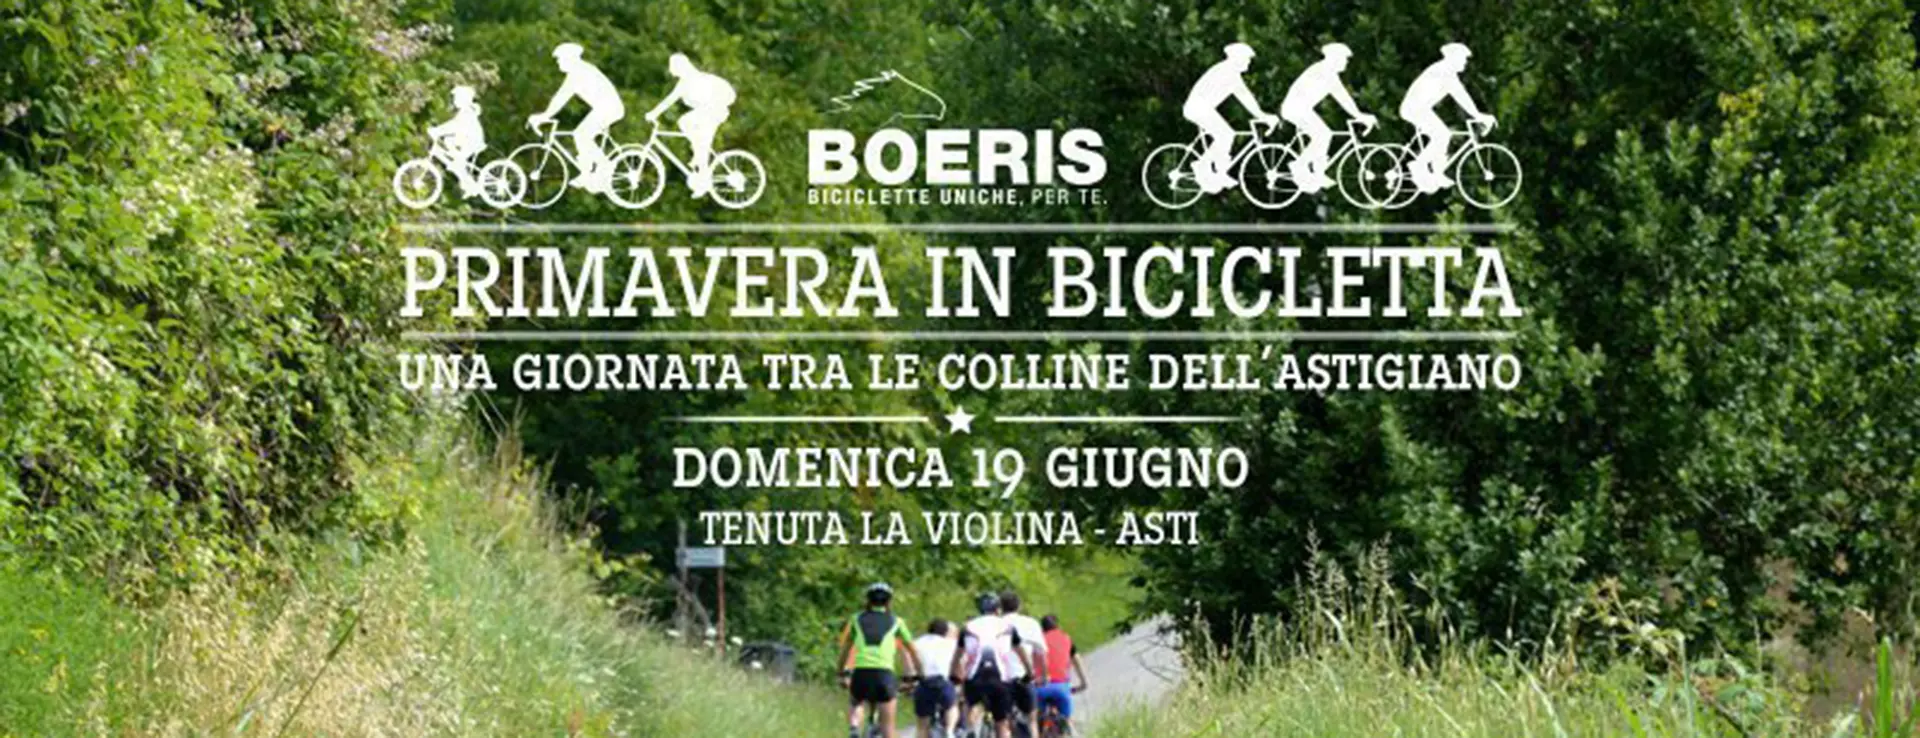 Copertina articolo eventi pedalata raduno Boeris una giornata tra le colline astigiane primavera in bicicletta domenica 19 settembre 2016 Tenuta la Violina